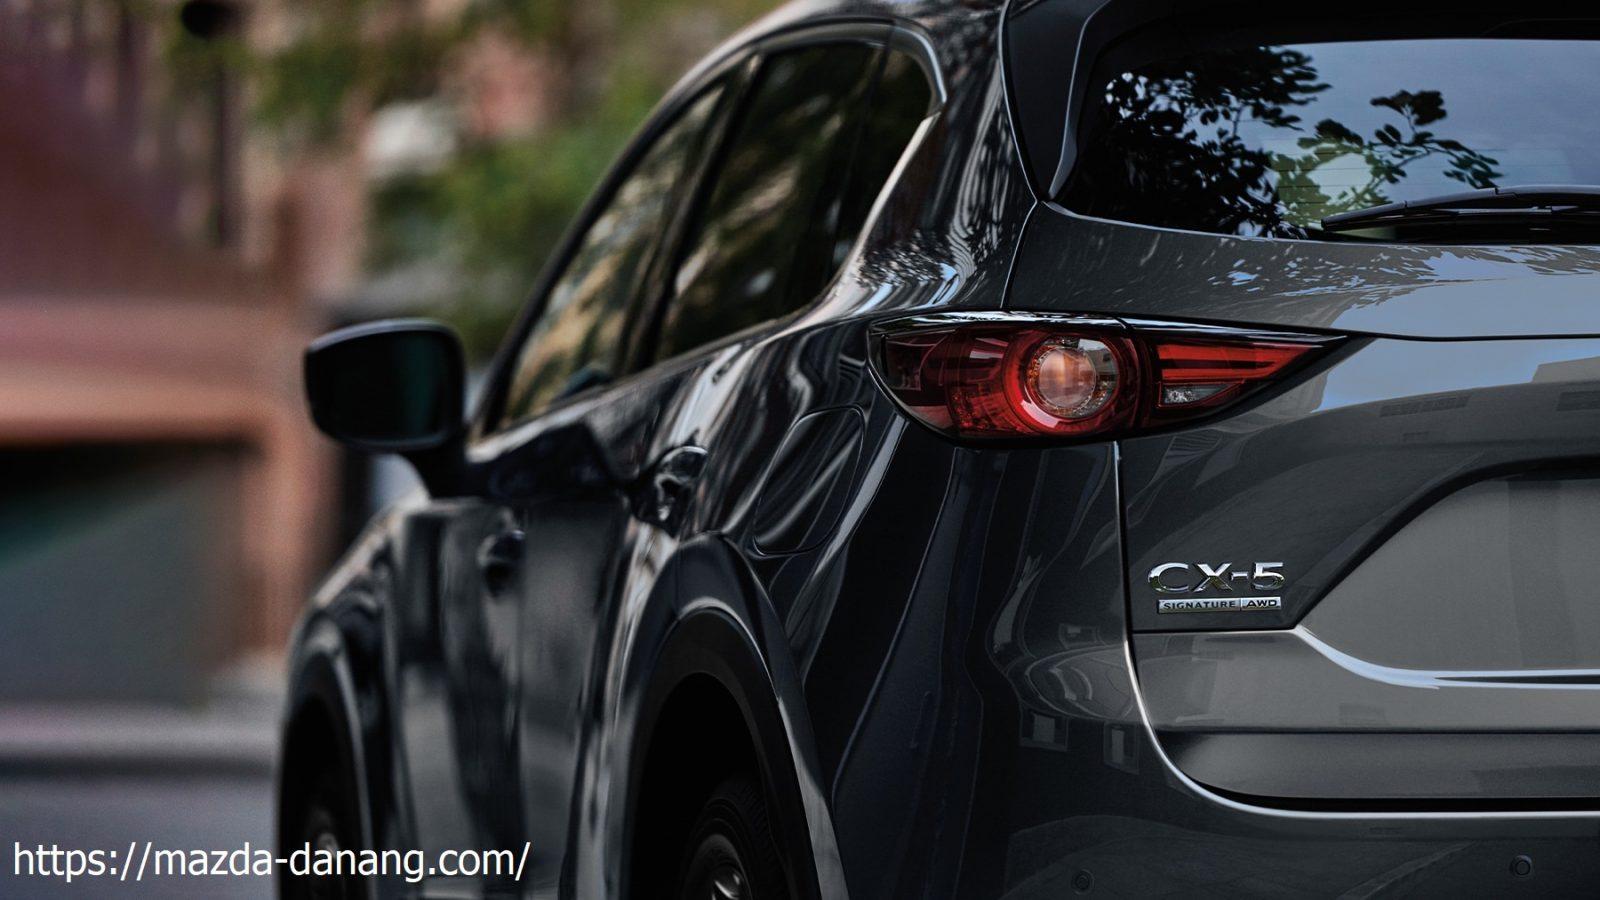 Đặng Nam Mazda bán xe SUV MAZDA CX5 2020 màu Nâu giá 949 triệu ở Hồ Chí  Minh